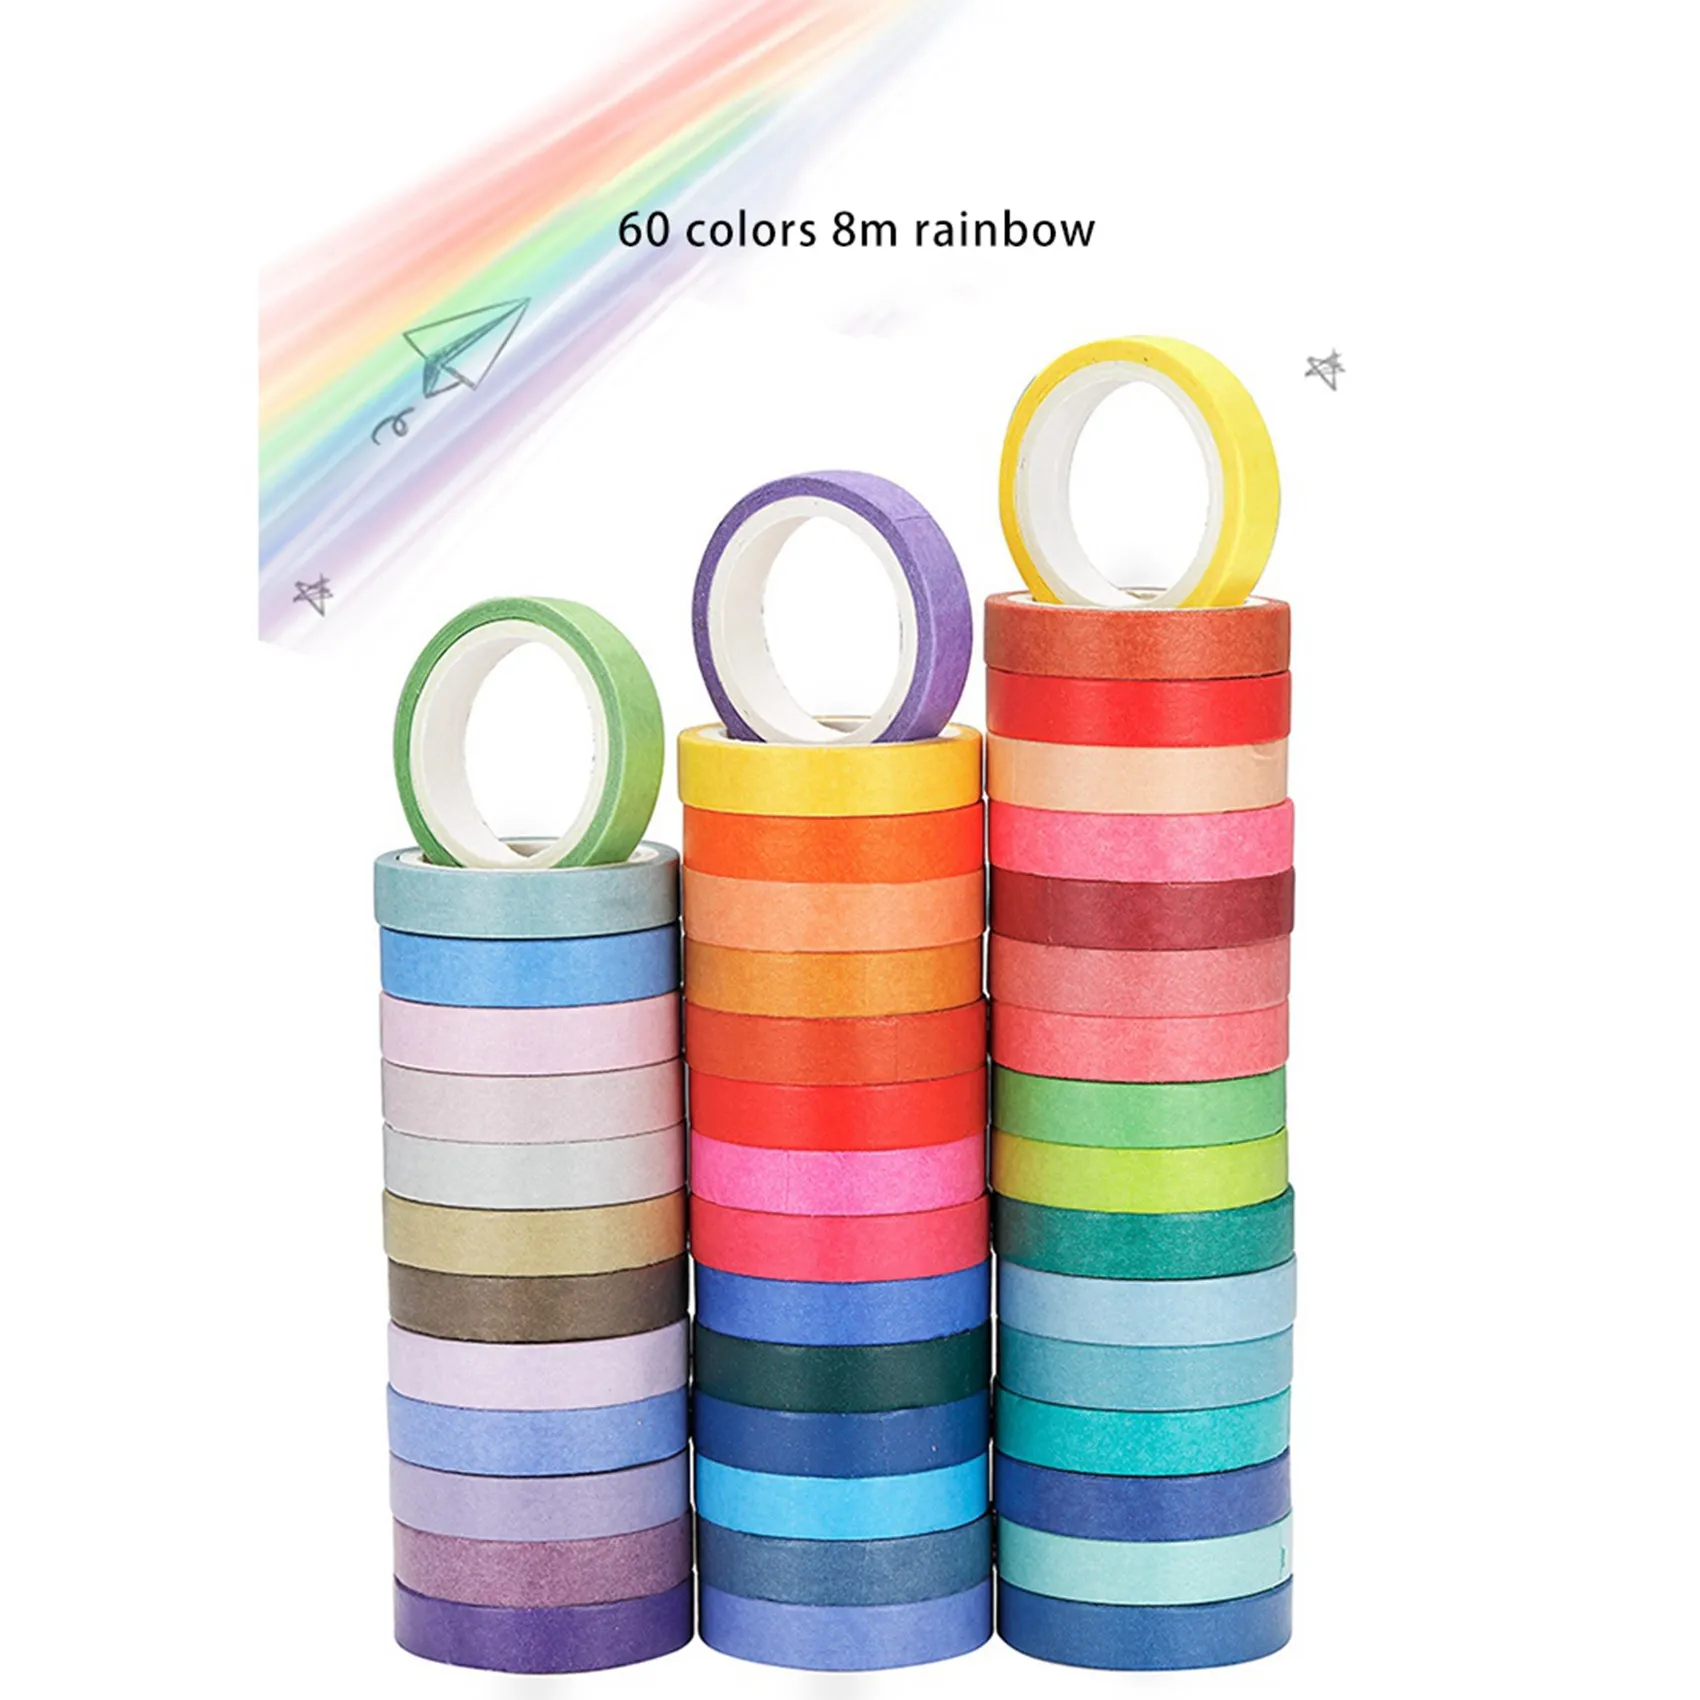 120 pezzi di base tinta unita nastro Washi nastro adesivo arcobaleno nastro adesivo decorativo adesivo diario Scrapbook cancelleria